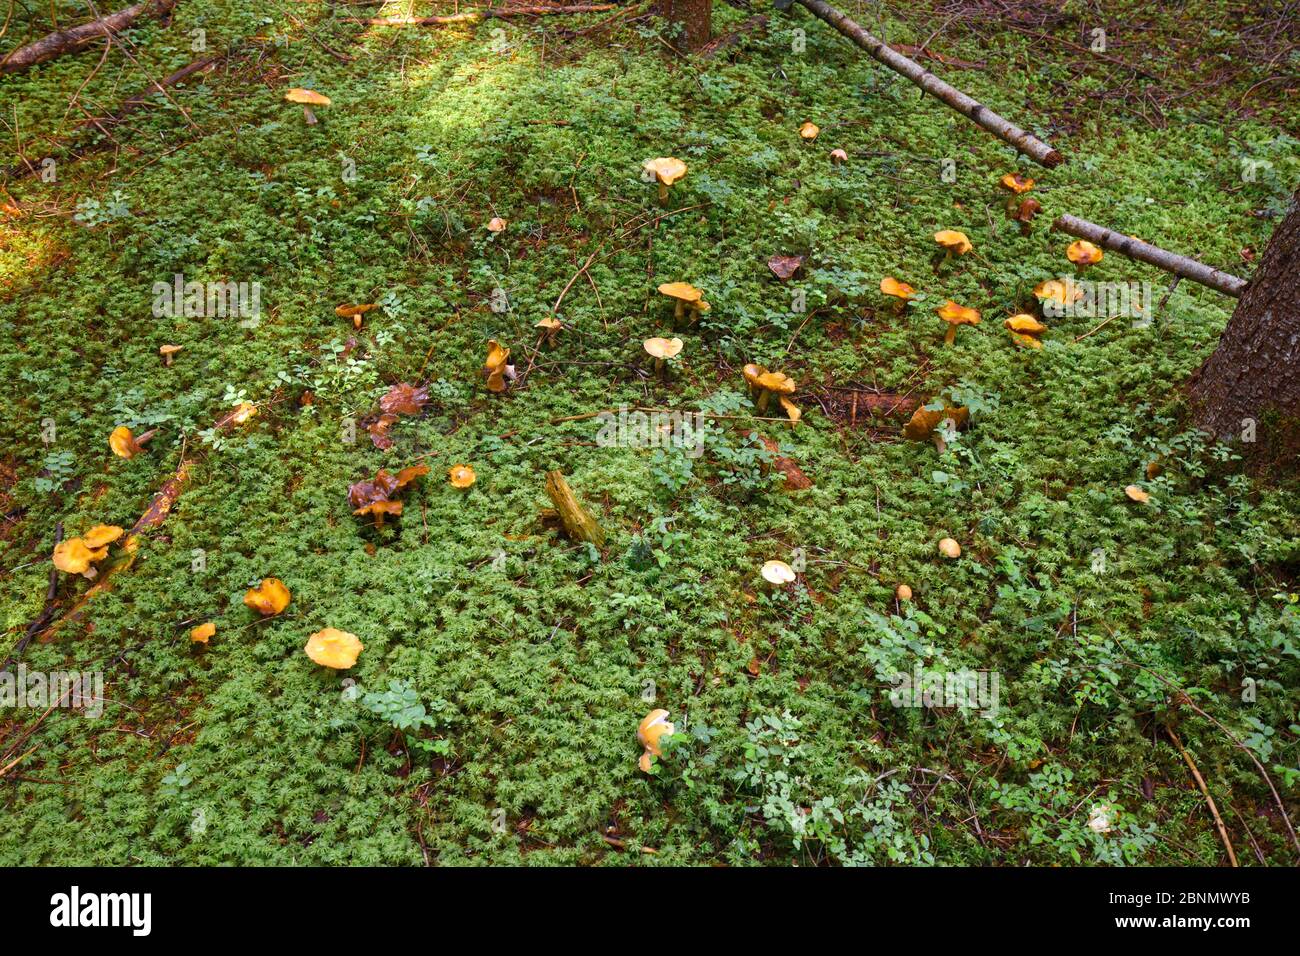 Varios hongos no comestibles crecen en el suelo húmedo del bosque cubierto de musgo Foto de stock